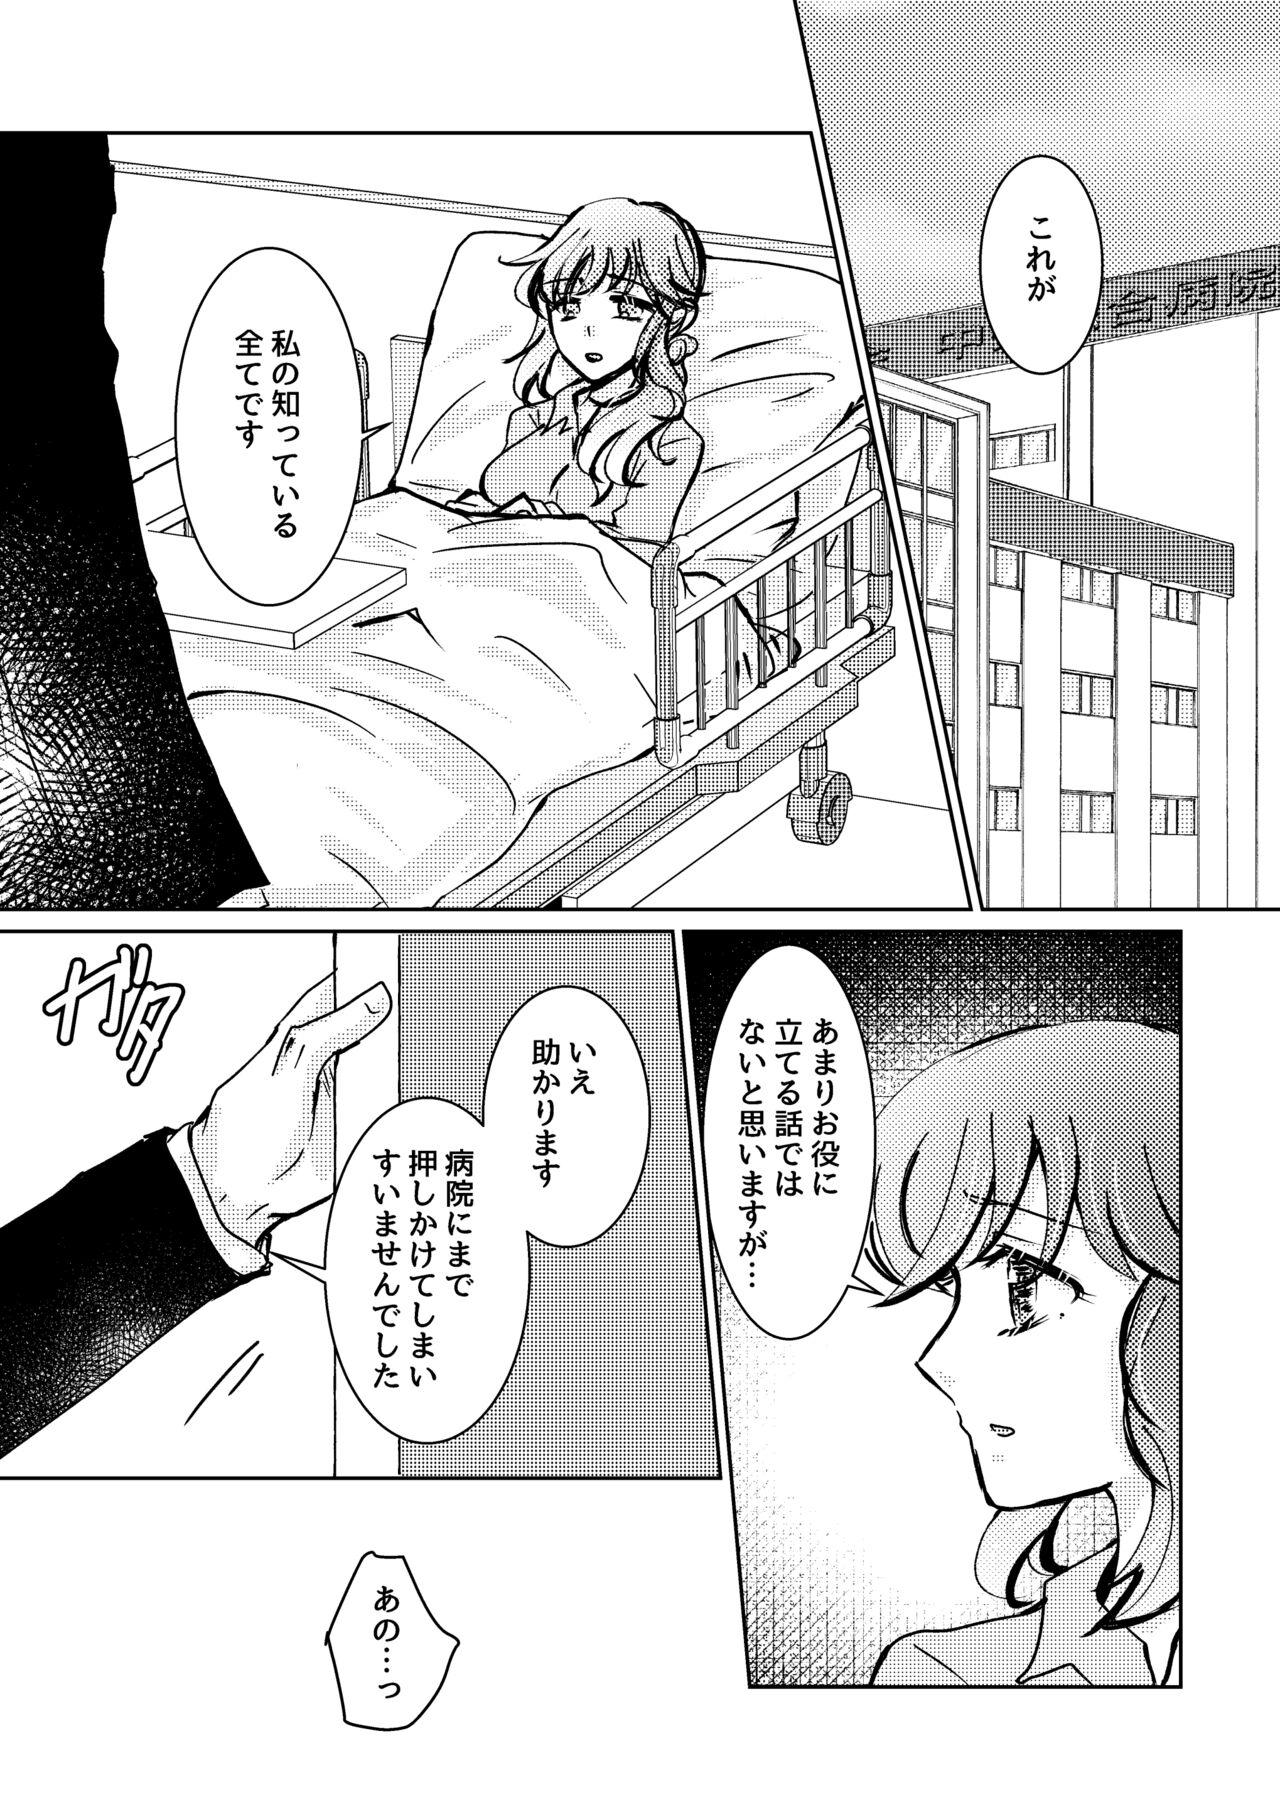 Naija Kareya Yoru no Hanaka Episode 3 Stroking - Page 2